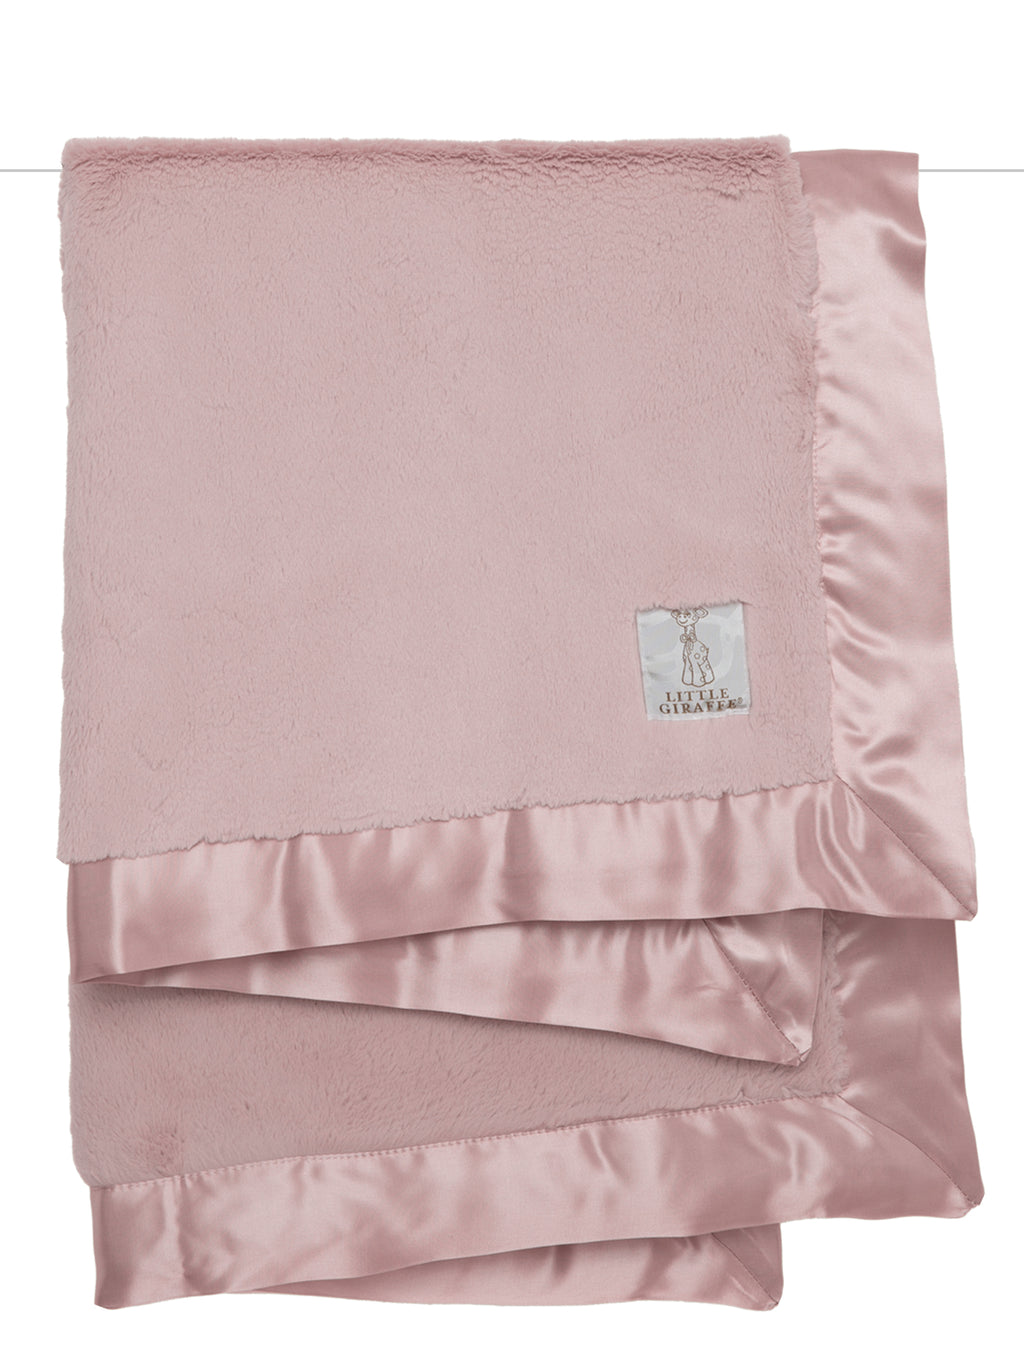 Luxe Blanket - Dusty Pink